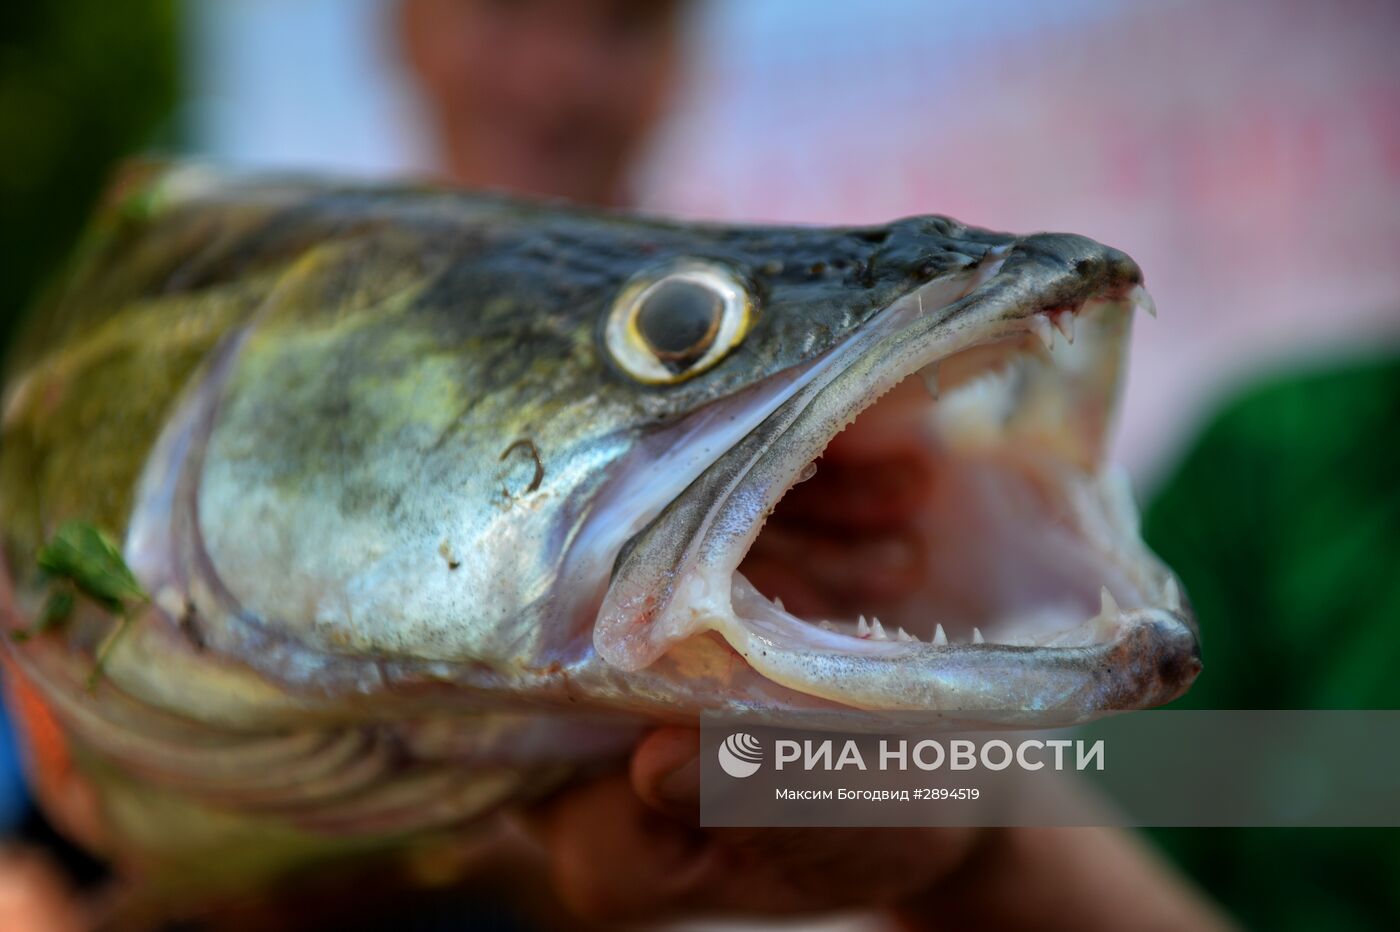 Чемпионат рыбной ловли и фестиваль "Камская уха"